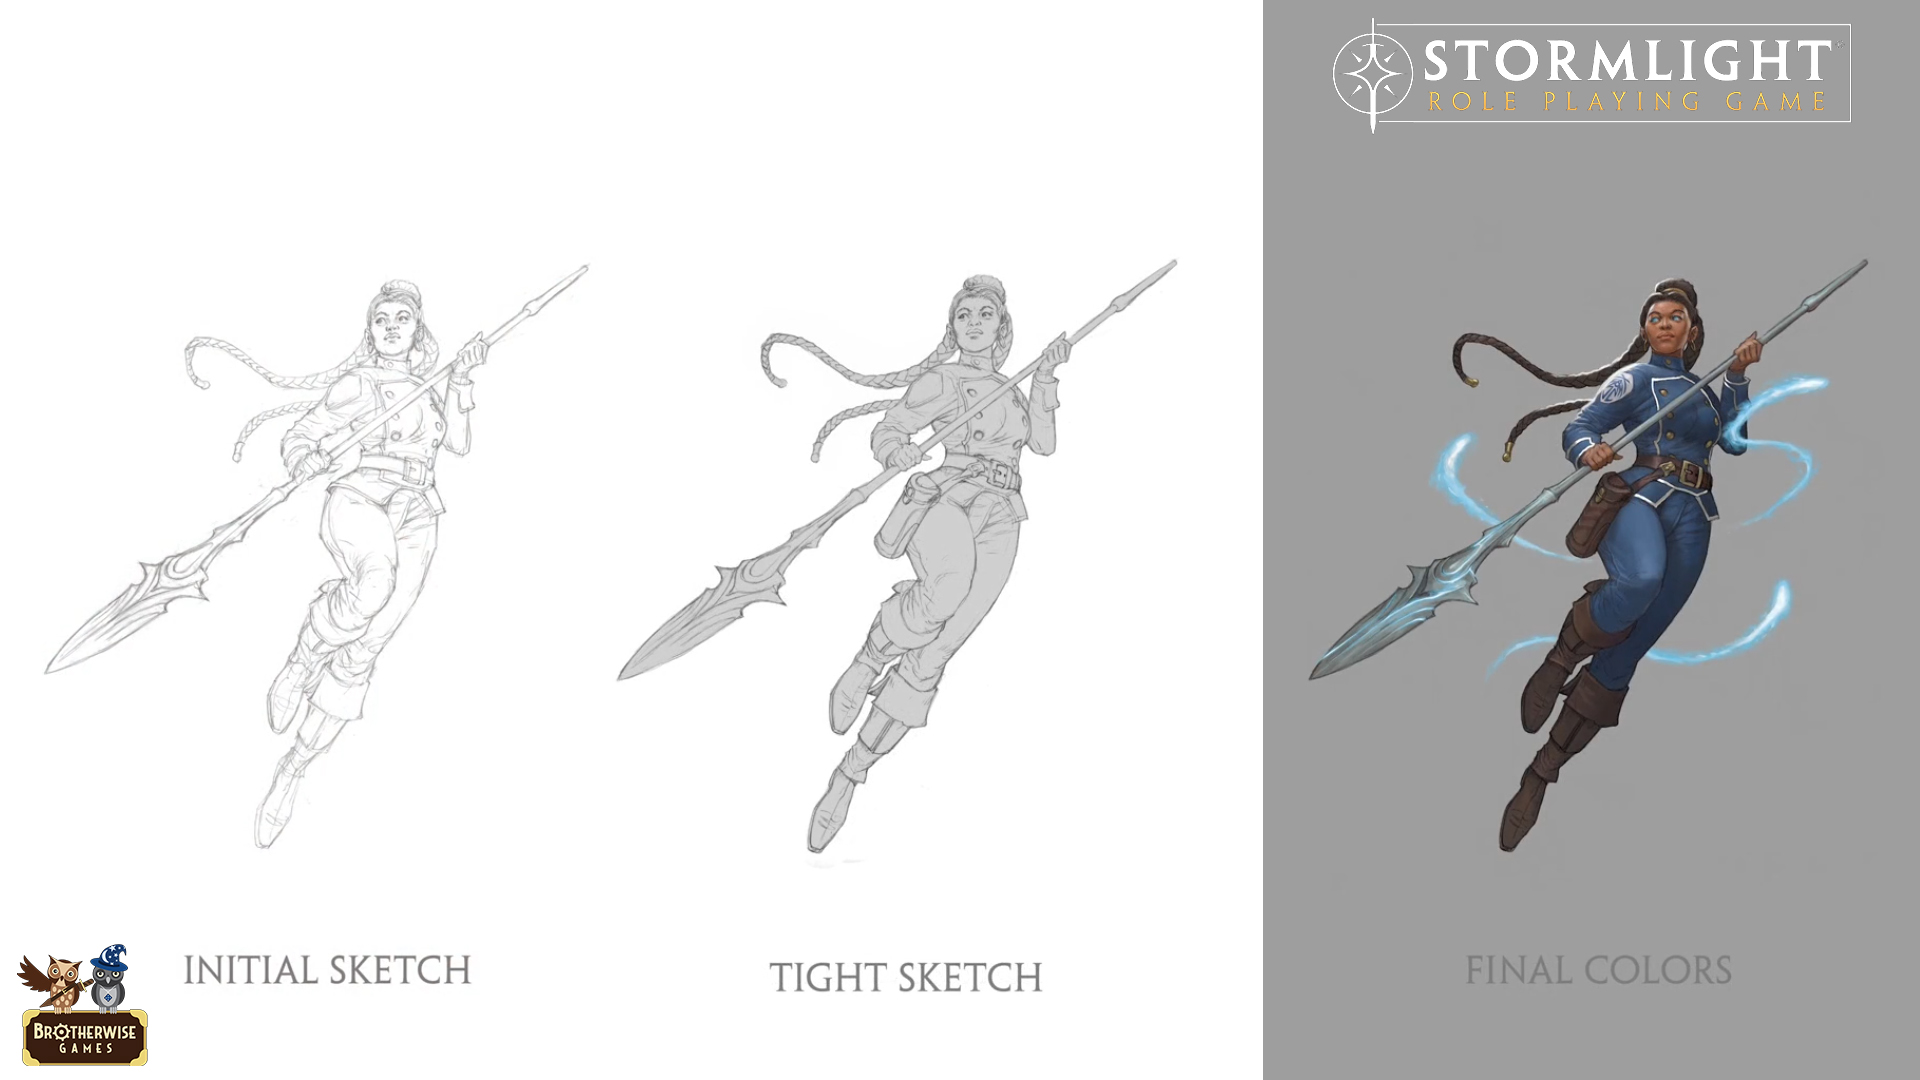 Stormlight Role Playing Game - Evolución del diseño de la Corredora del Viento azishiana desde el boceto a la ilustración a color